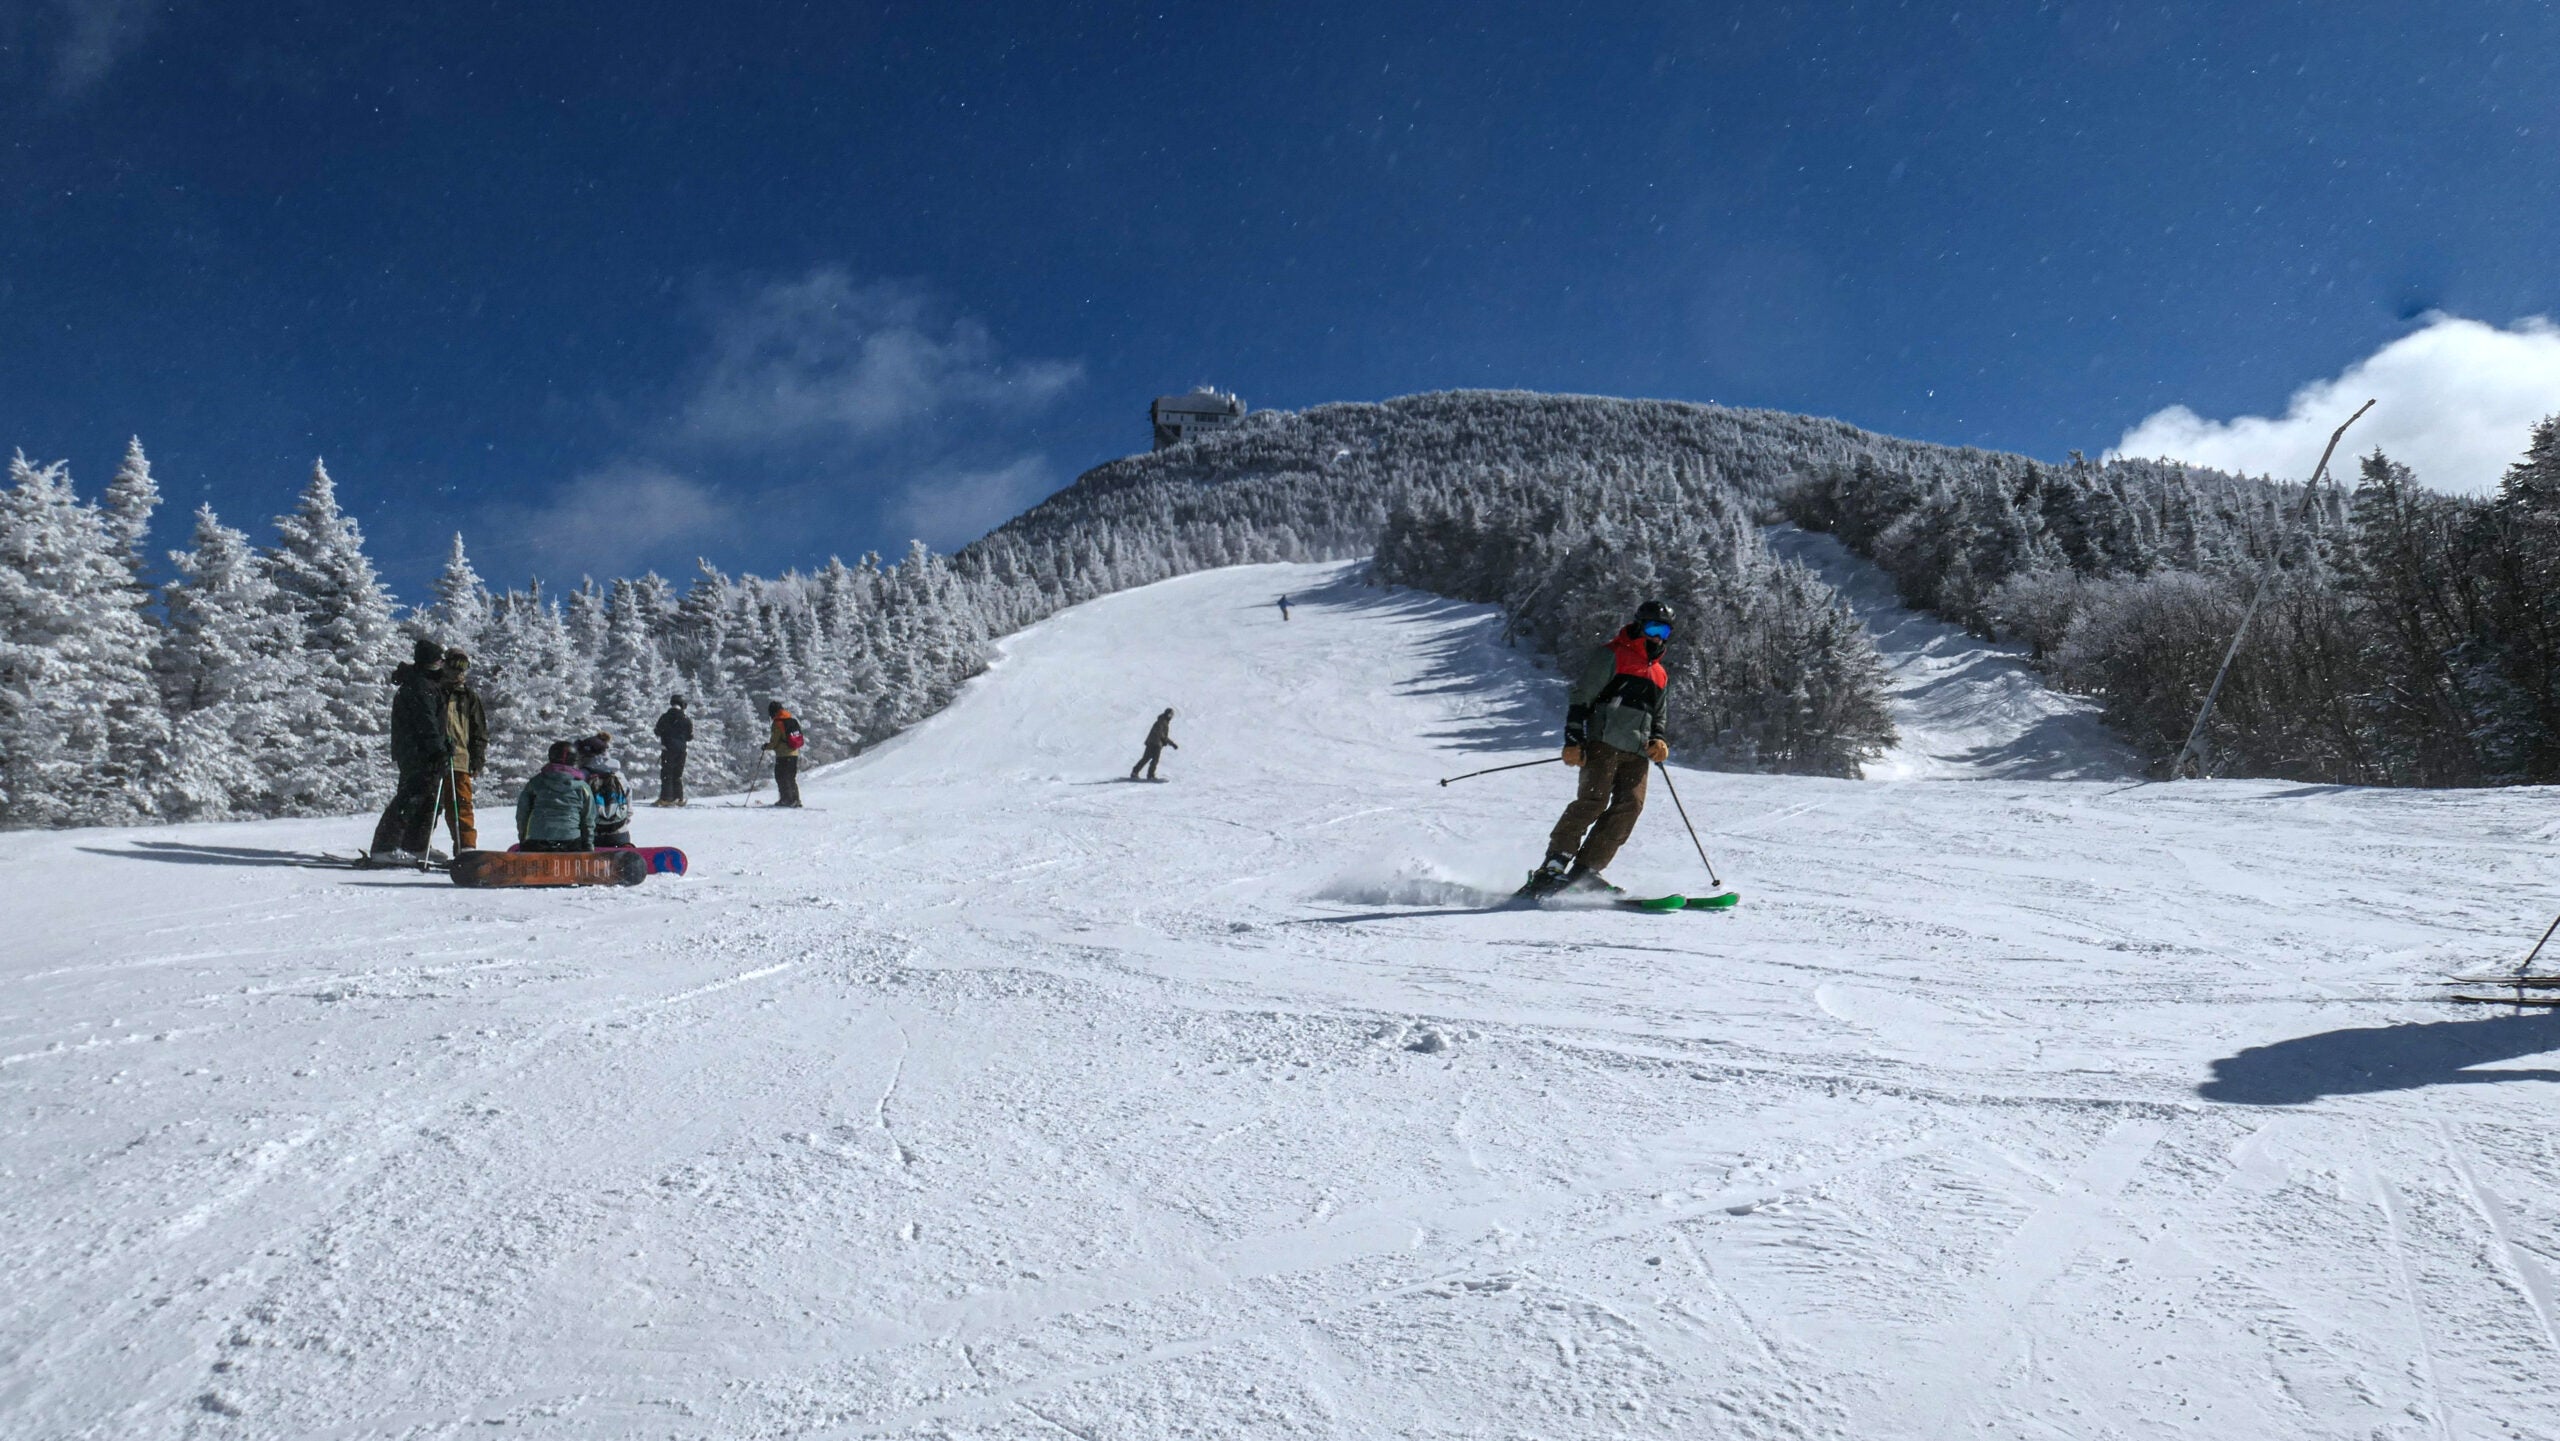 Razernij eindpunt toon Do you plan to ski or snowboard this season? Let us know.